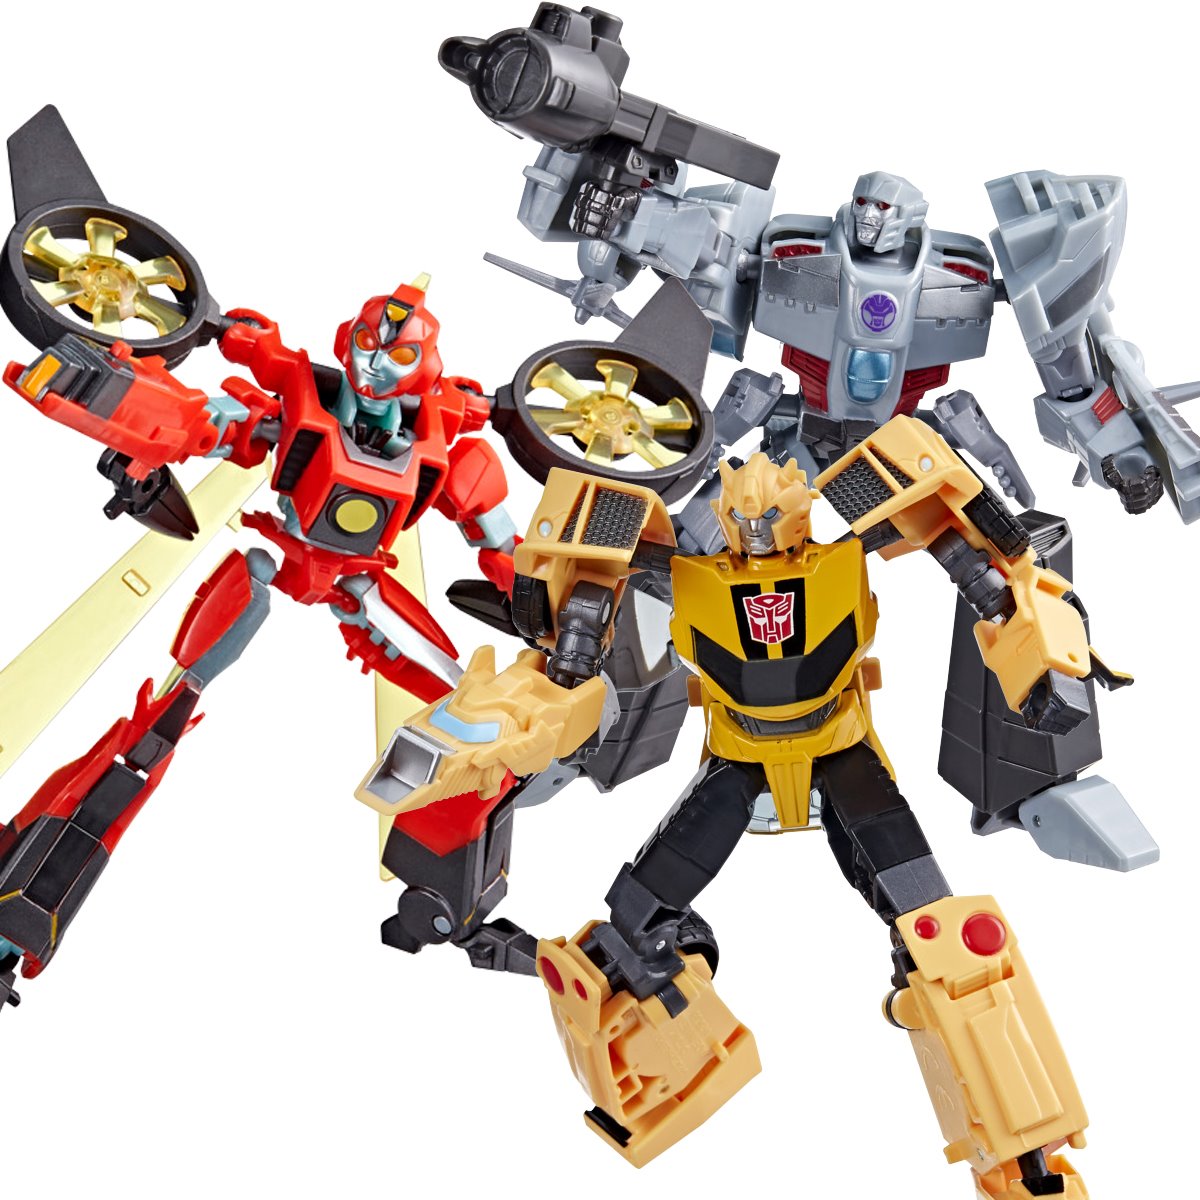 Hãy nhanh tay kích hoạt ảnh Earthspark Deluxe Transformers để khám phá những sức mạnh đầy bất ngờ của những chiến binh robot mạnh mẽ này.